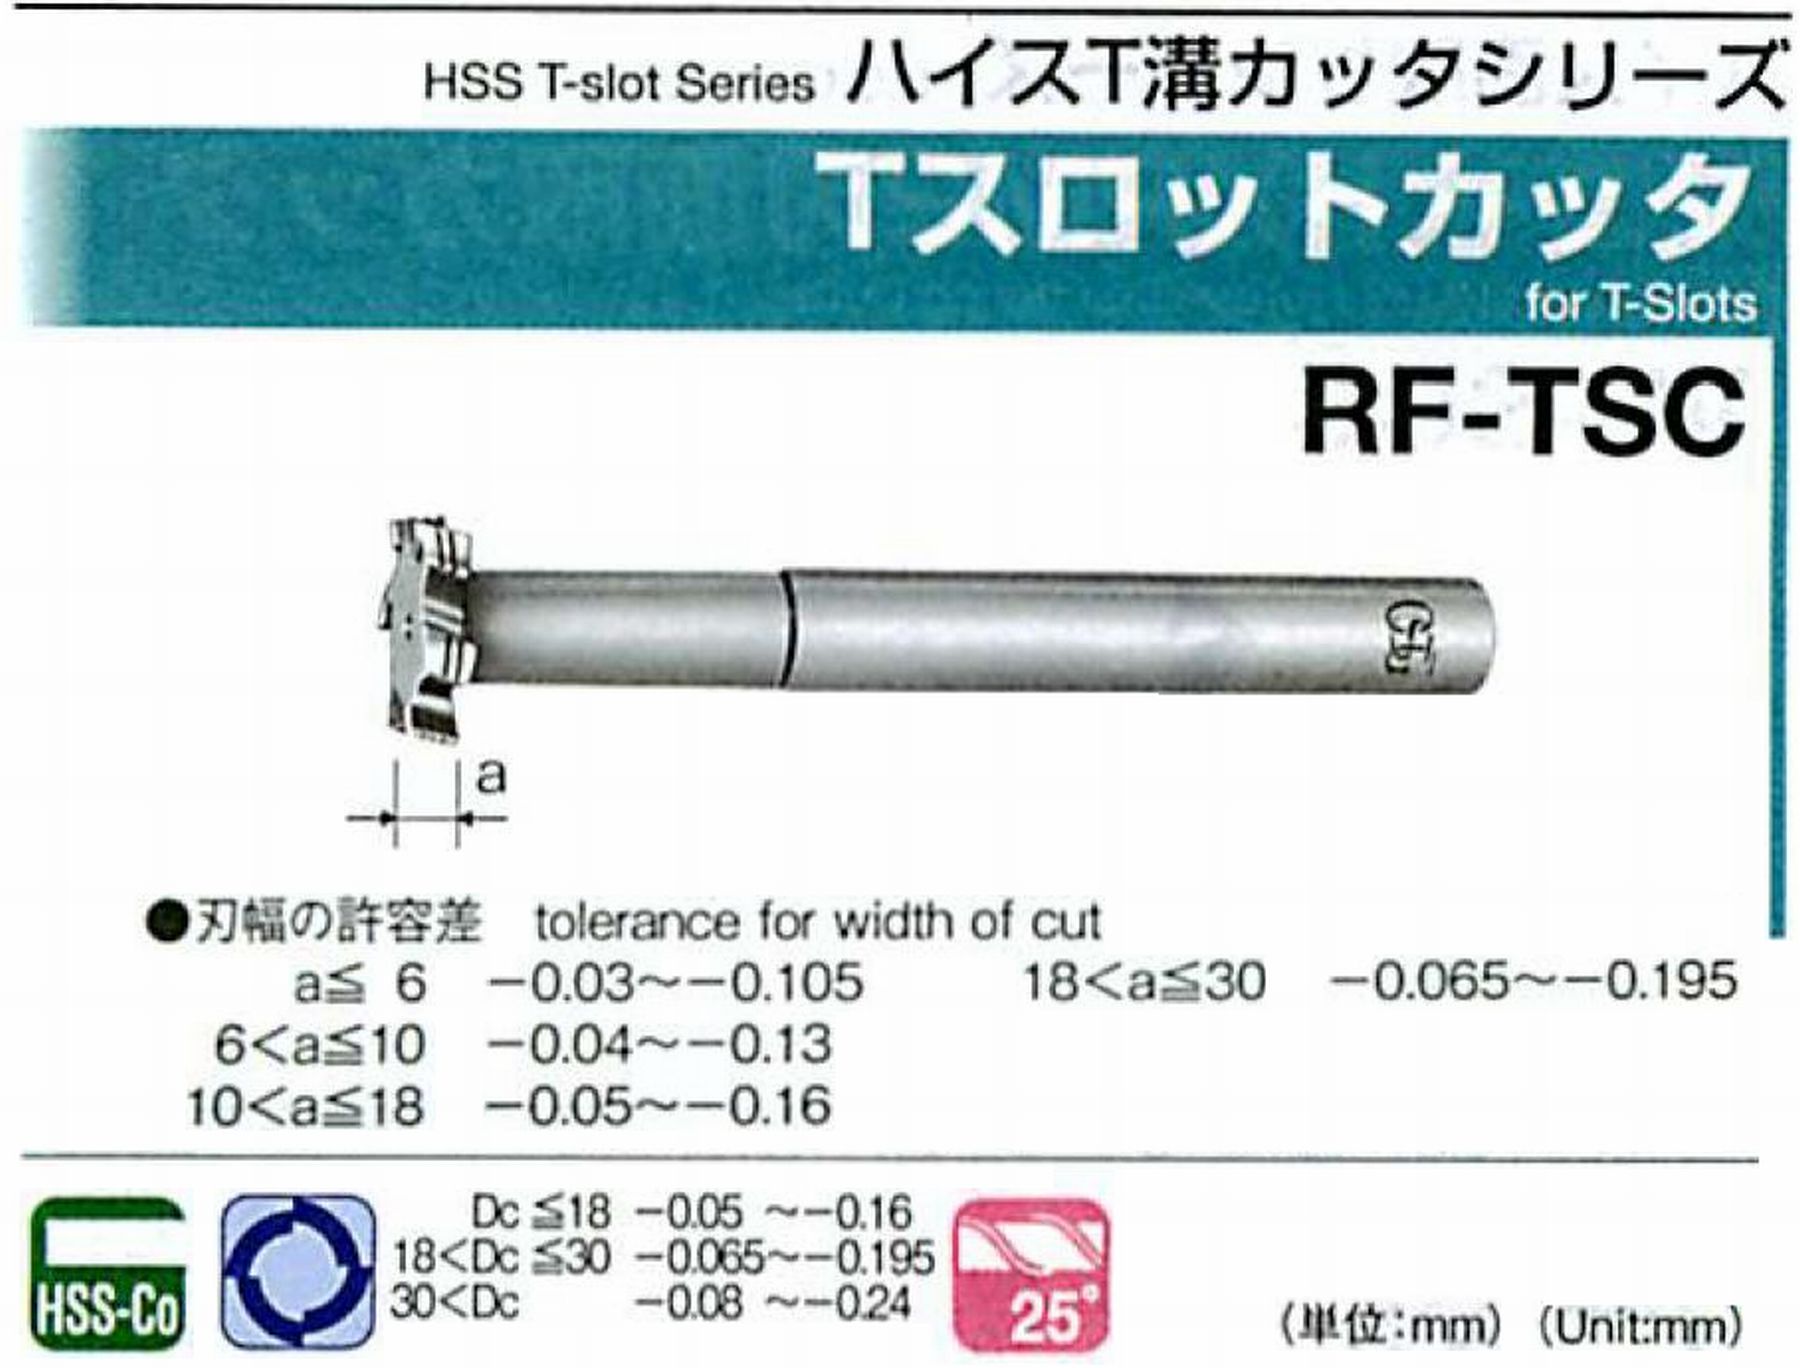 オーエスジー/OSG Tスロットカッタ RF-TSC 外径35 刃幅10 全長160 シャンク径20mm 首下長57 首径17 刃数6